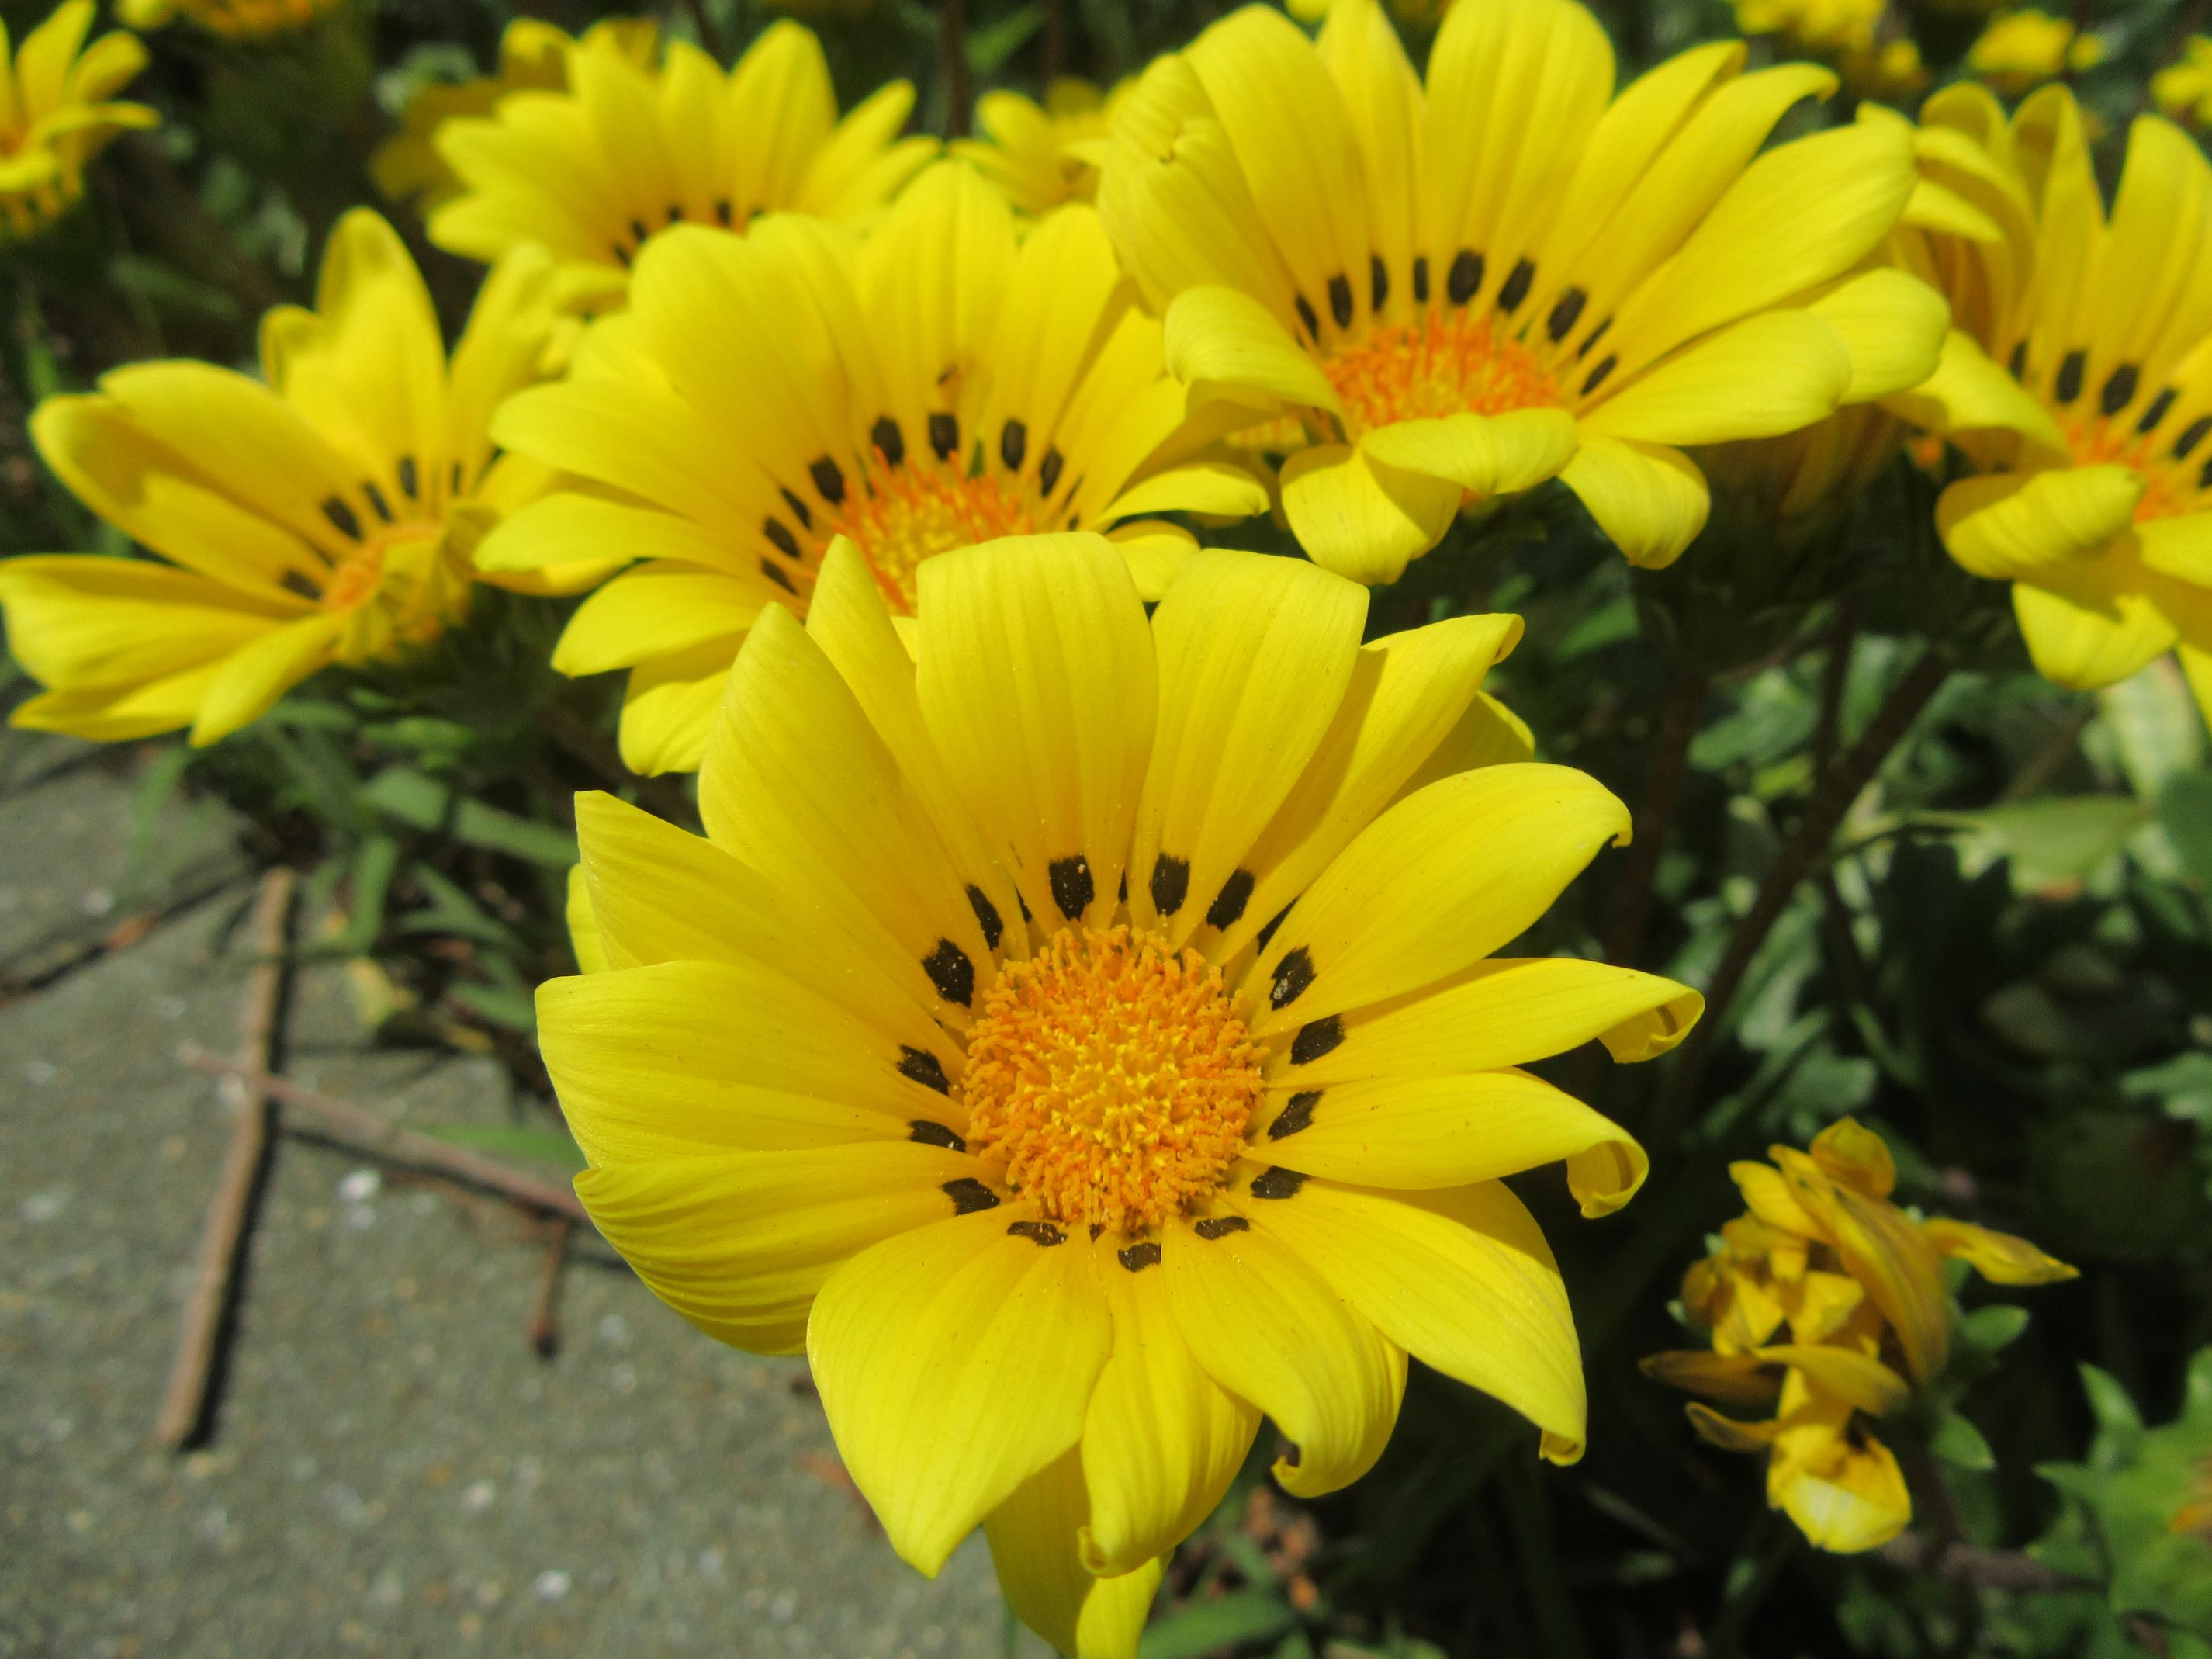 長崎県西彼杵郡長与町で撮影した、黄色いガザニアの花。